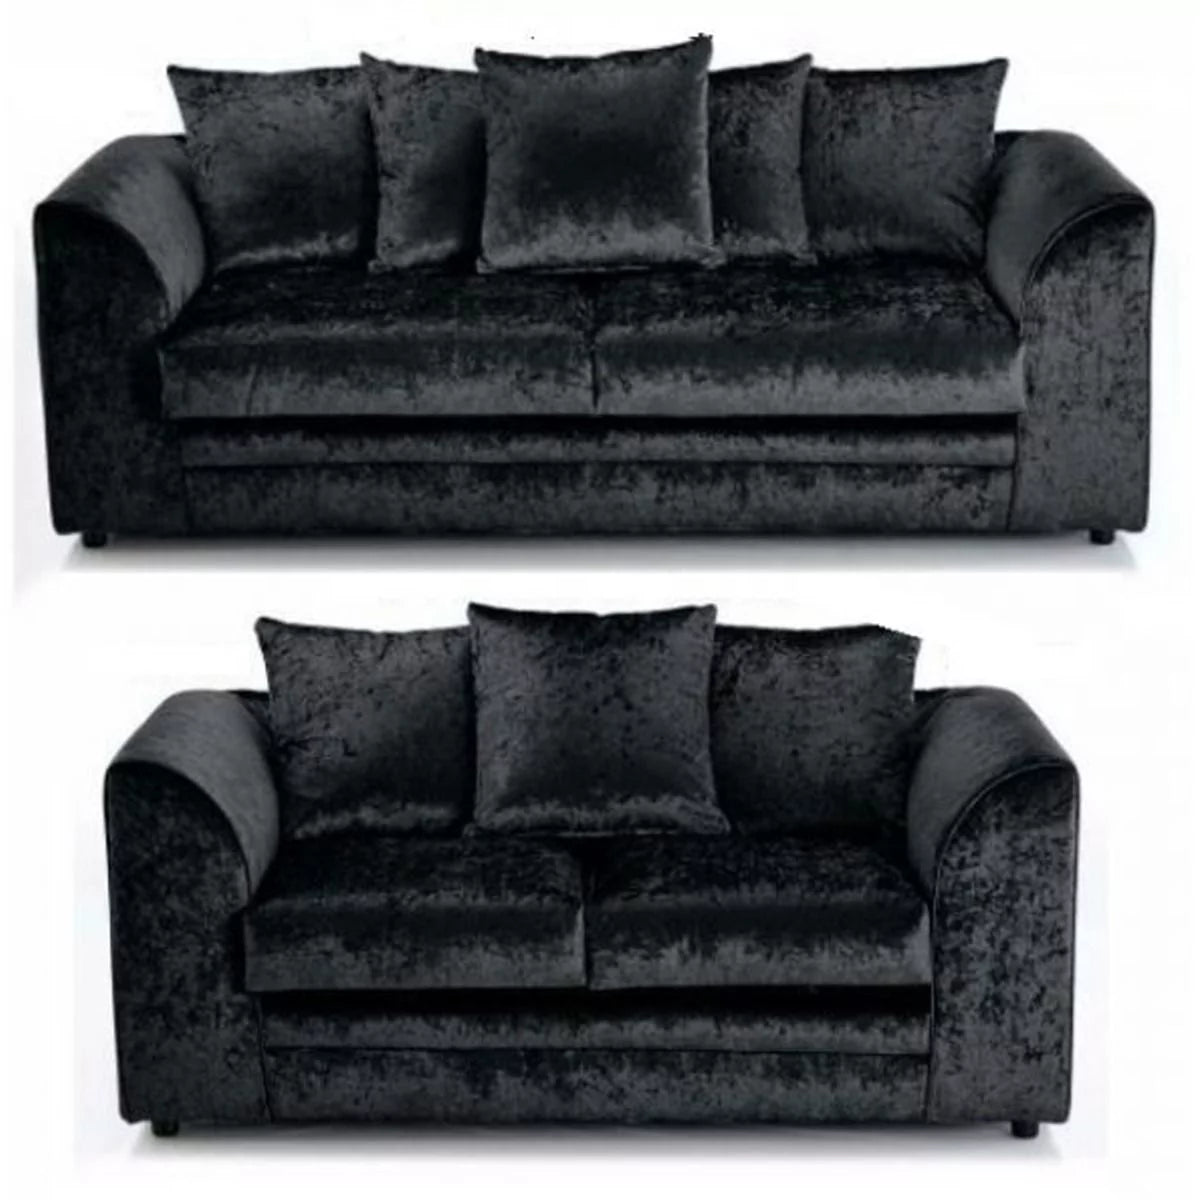 Arabia Crushed Velvet 3 Seater Sofa - Black